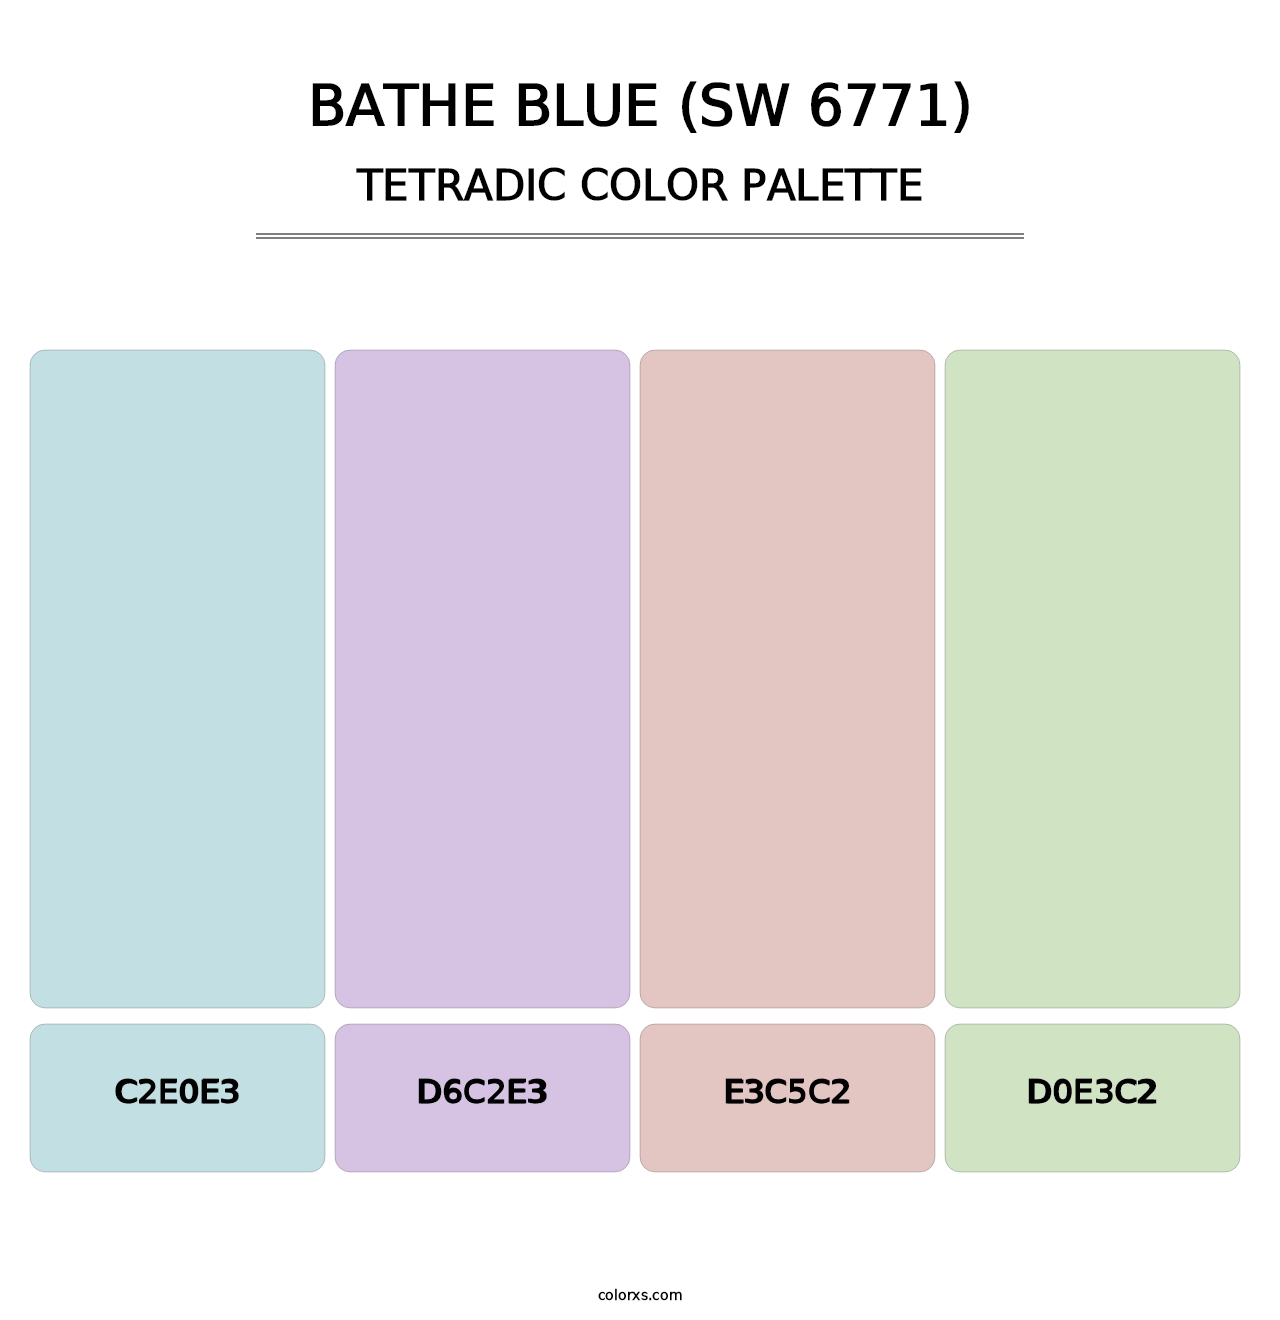 Bathe Blue (SW 6771) - Tetradic Color Palette